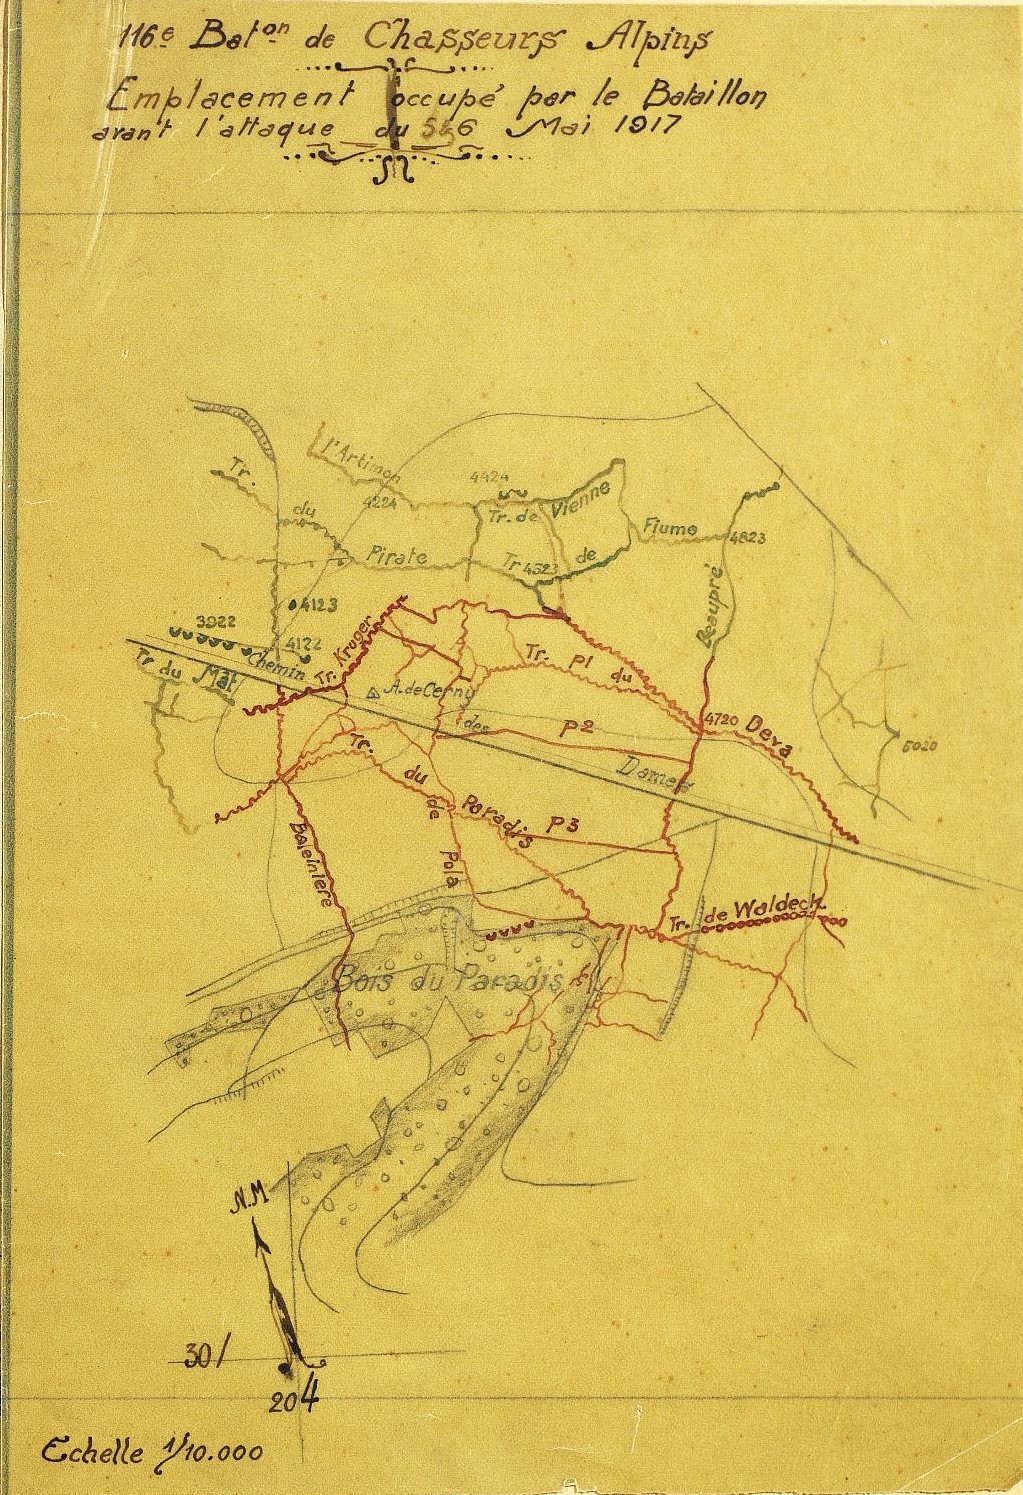 Emplacement occupé par le 116e BCA avant l'attaque du 5 mai 1917